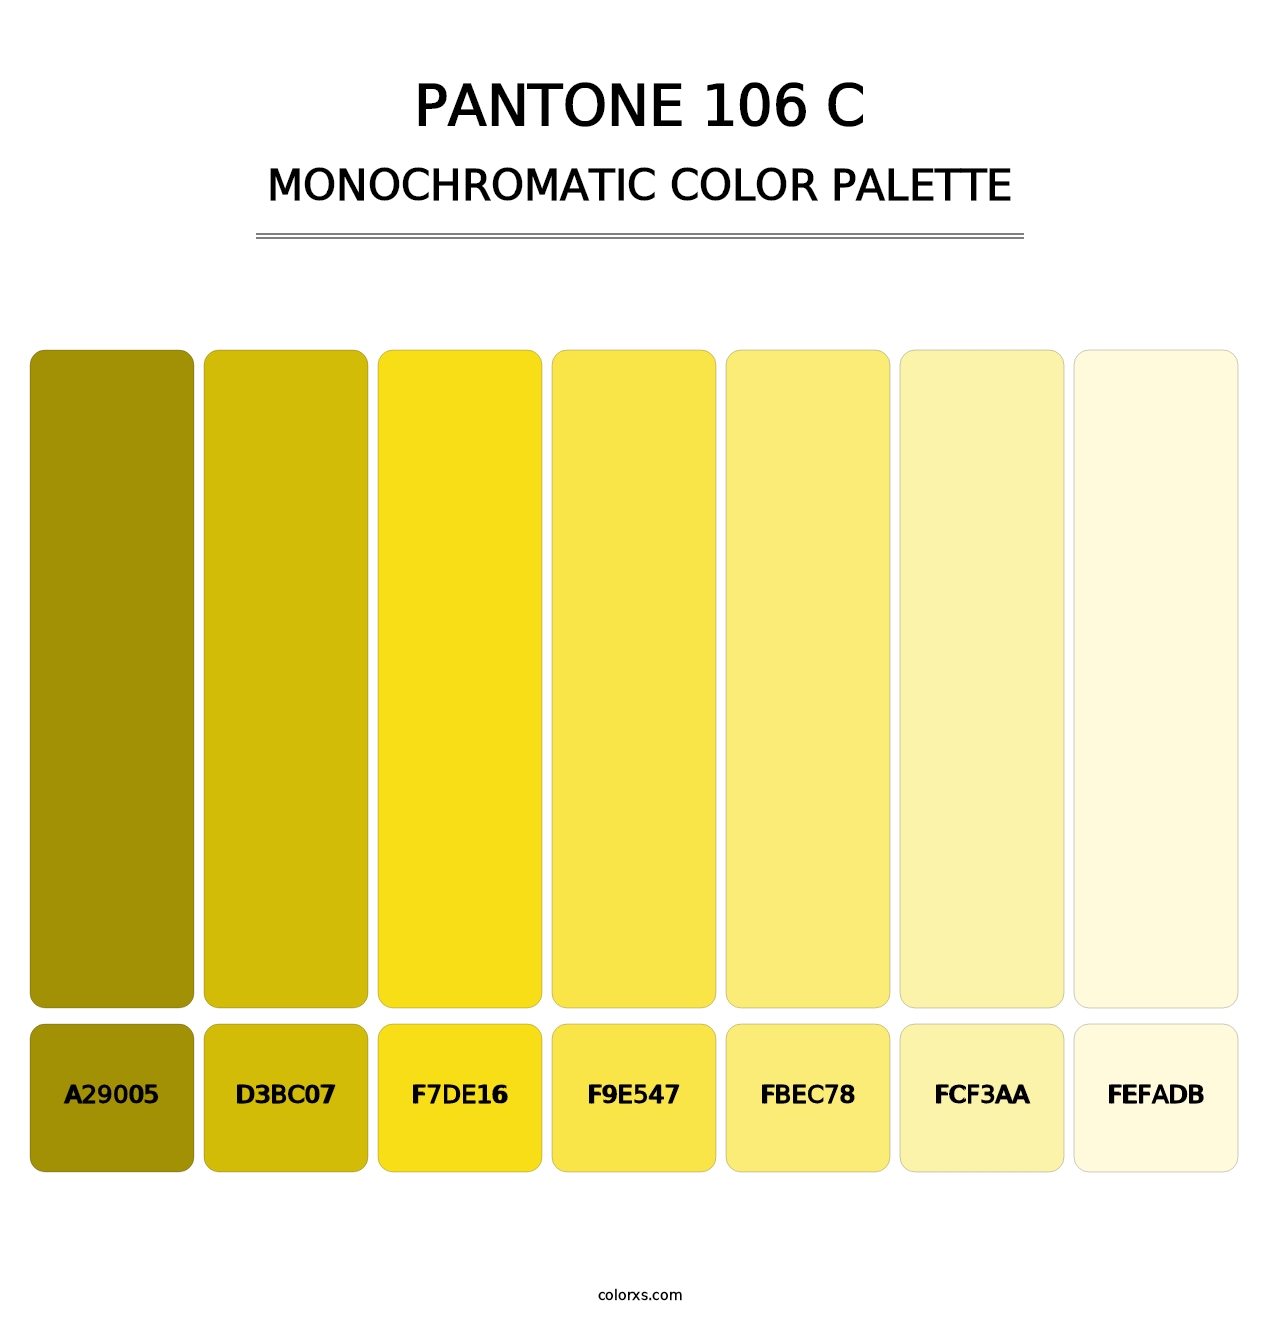 PANTONE 106 C - Monochromatic Color Palette